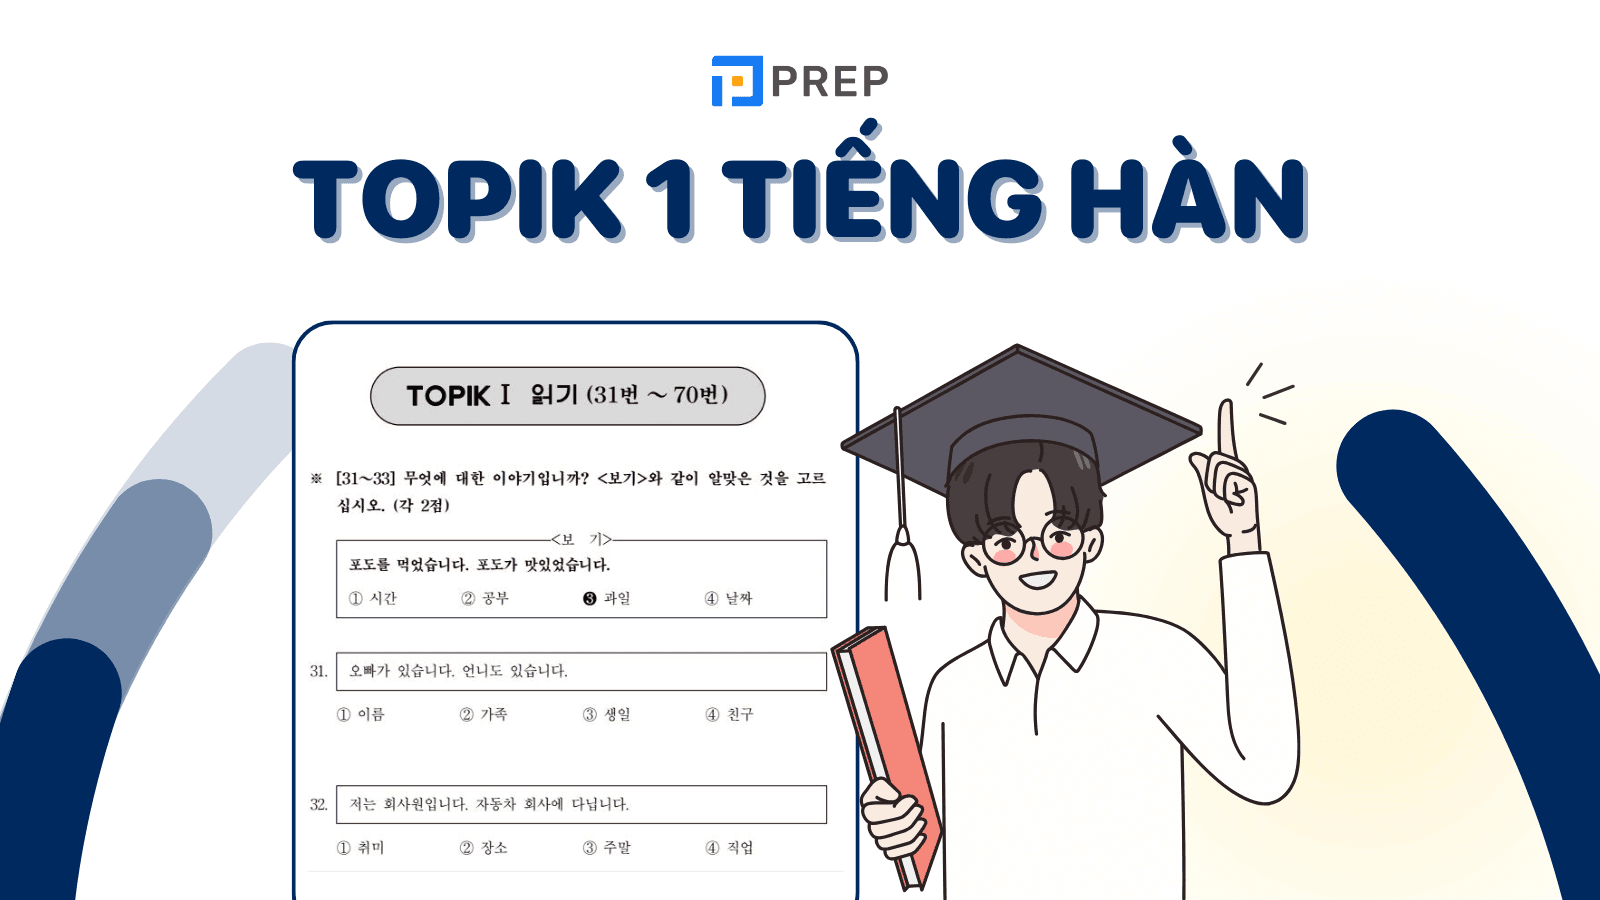 TOPIK 1 là gì? Thông tin chi tiết về trình độ TOPIK 1 tiếng Hàn